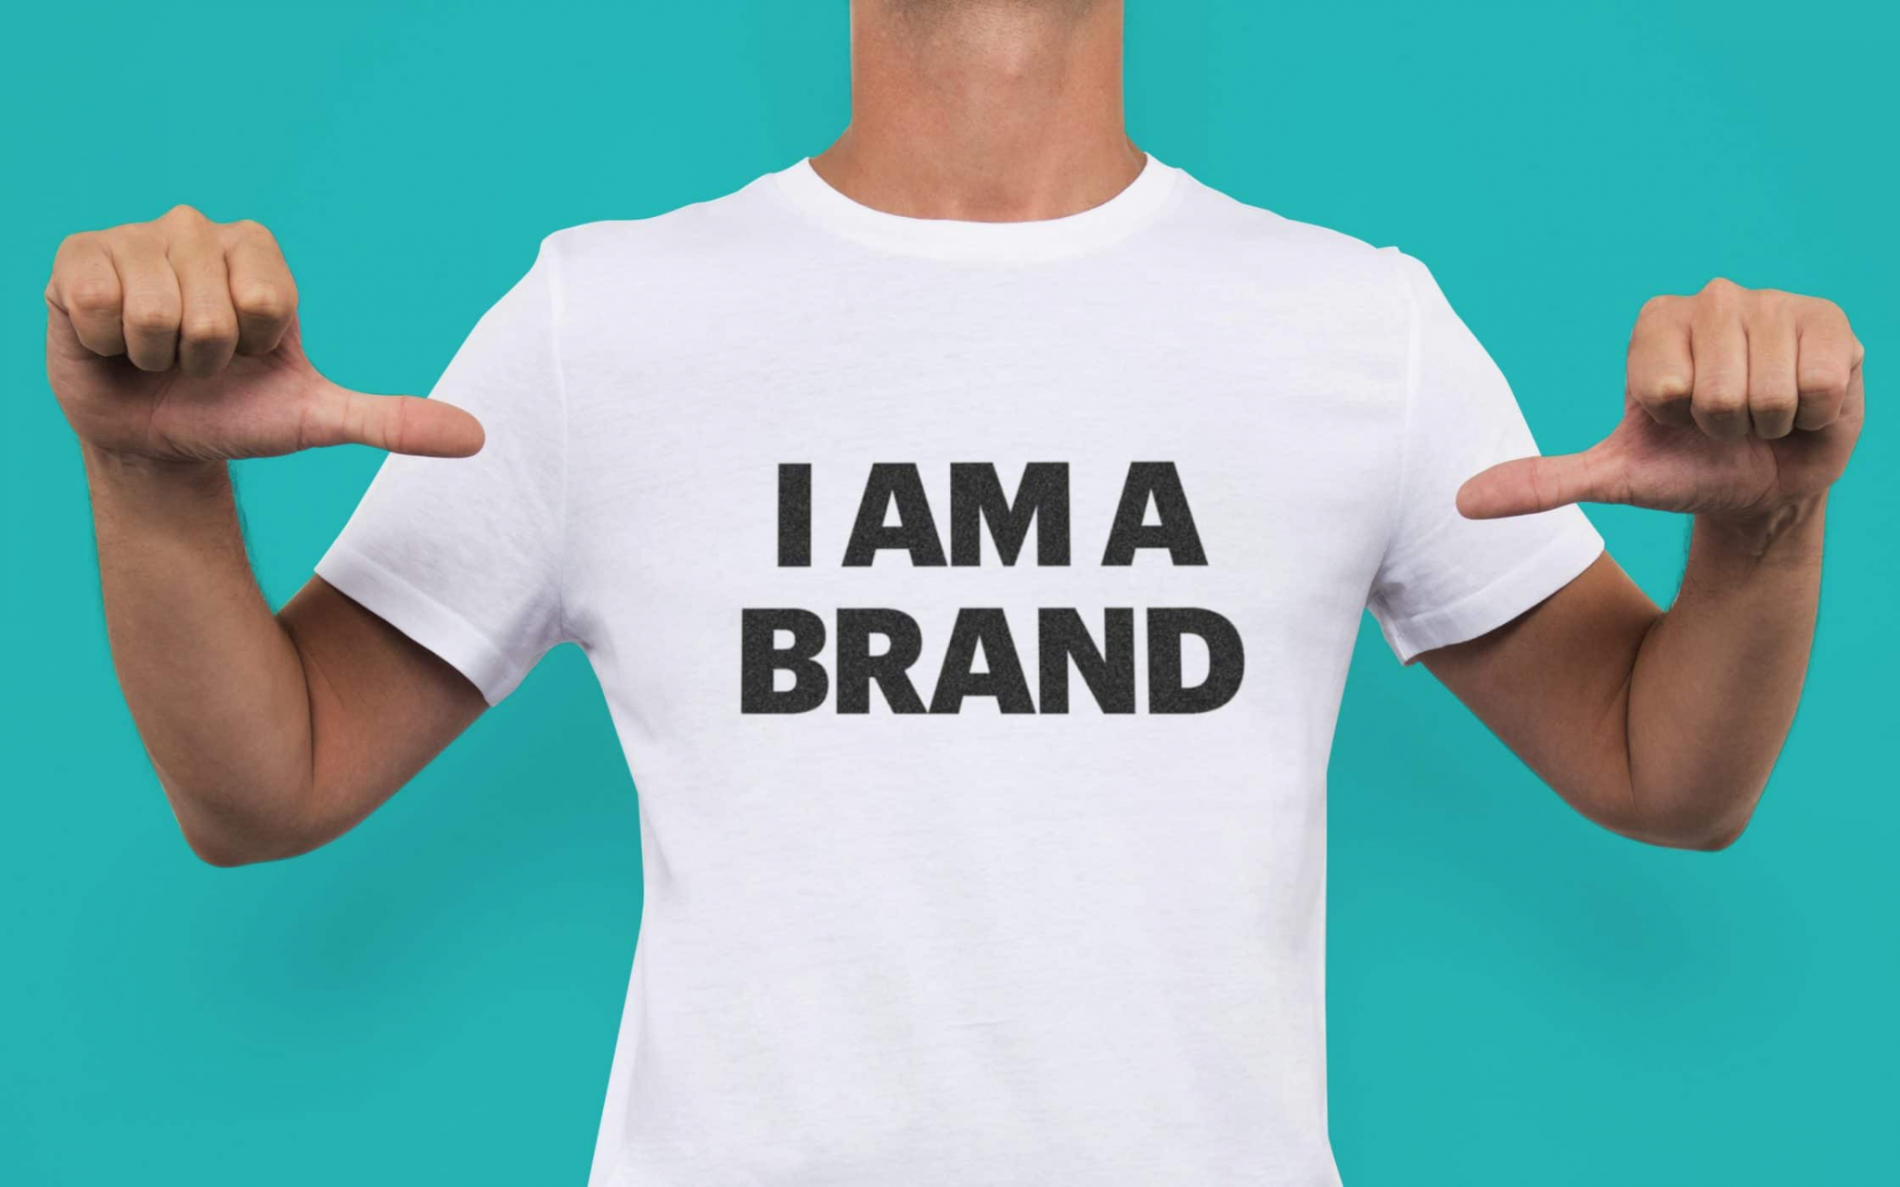 Xây dựng thương hiệu cá nhân - Cái “giá” của một nhãn hiệu “hàng real”